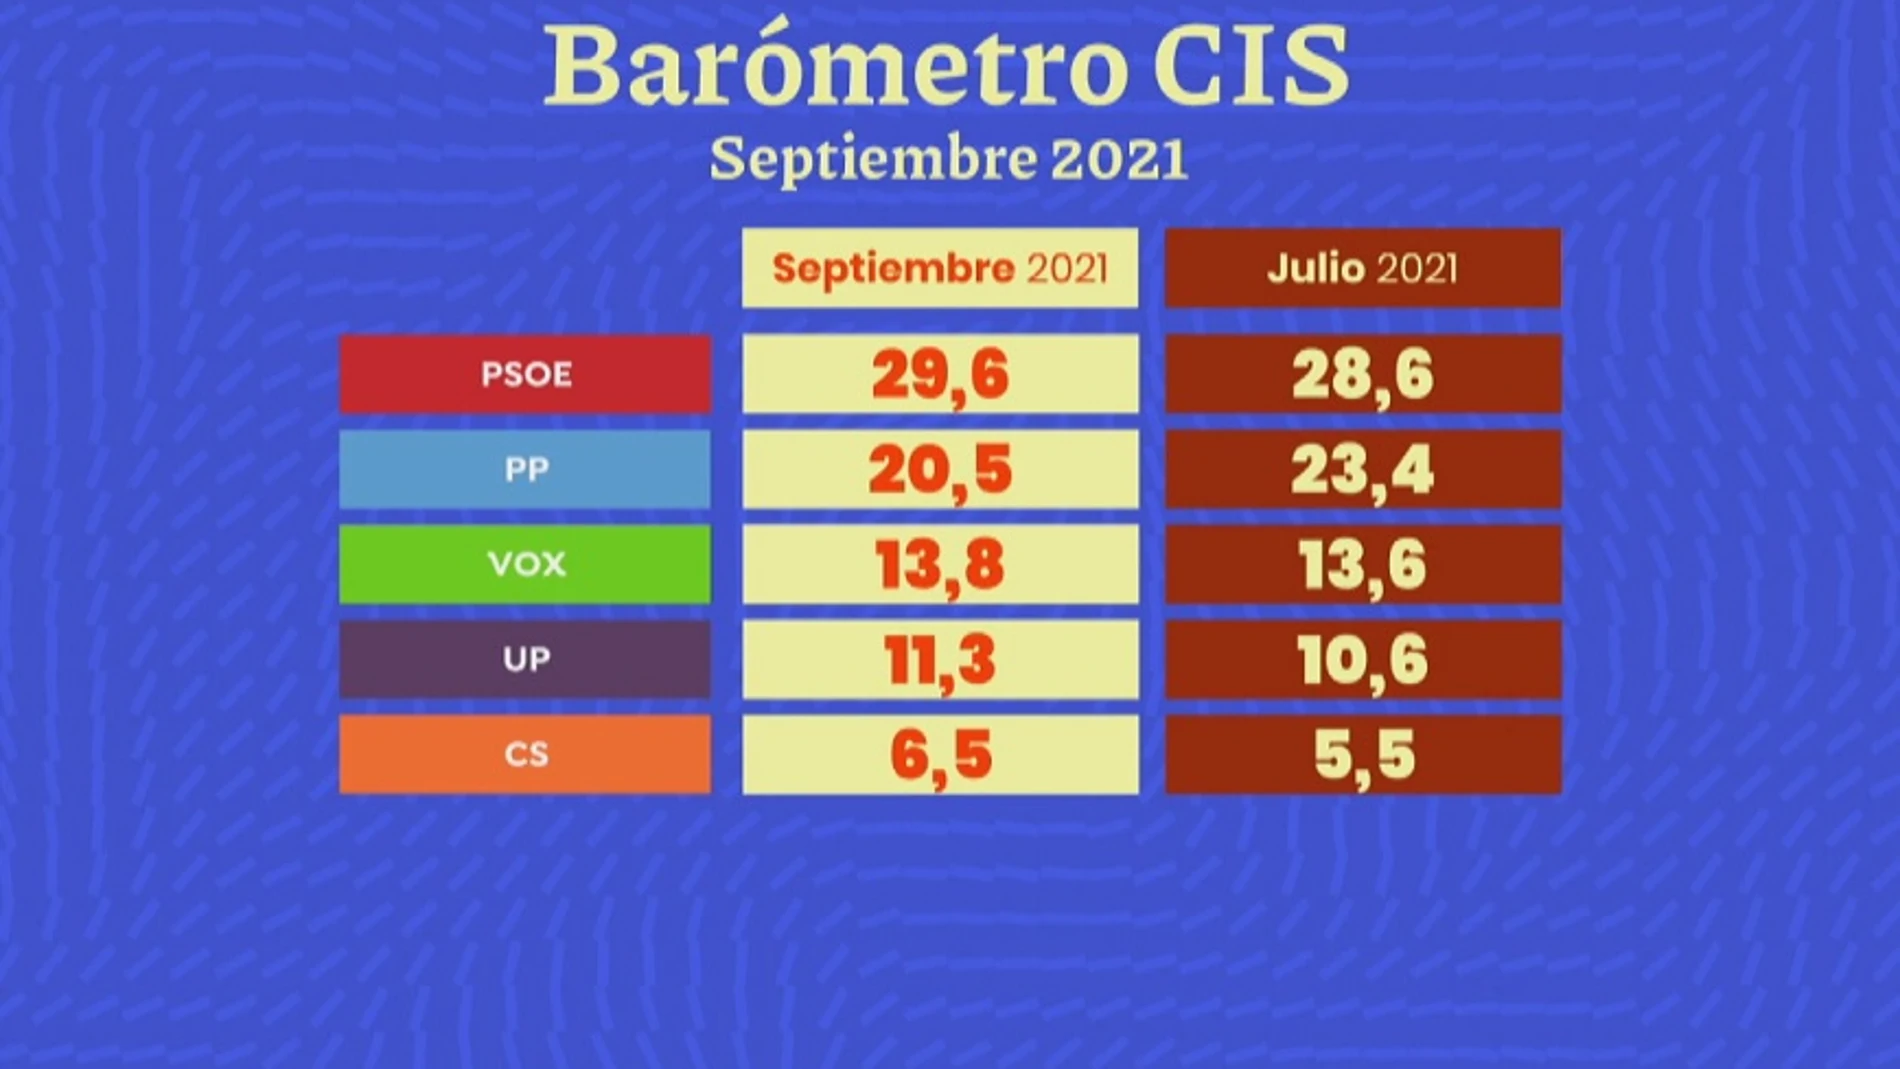 Barómetro del CIS de septiembre